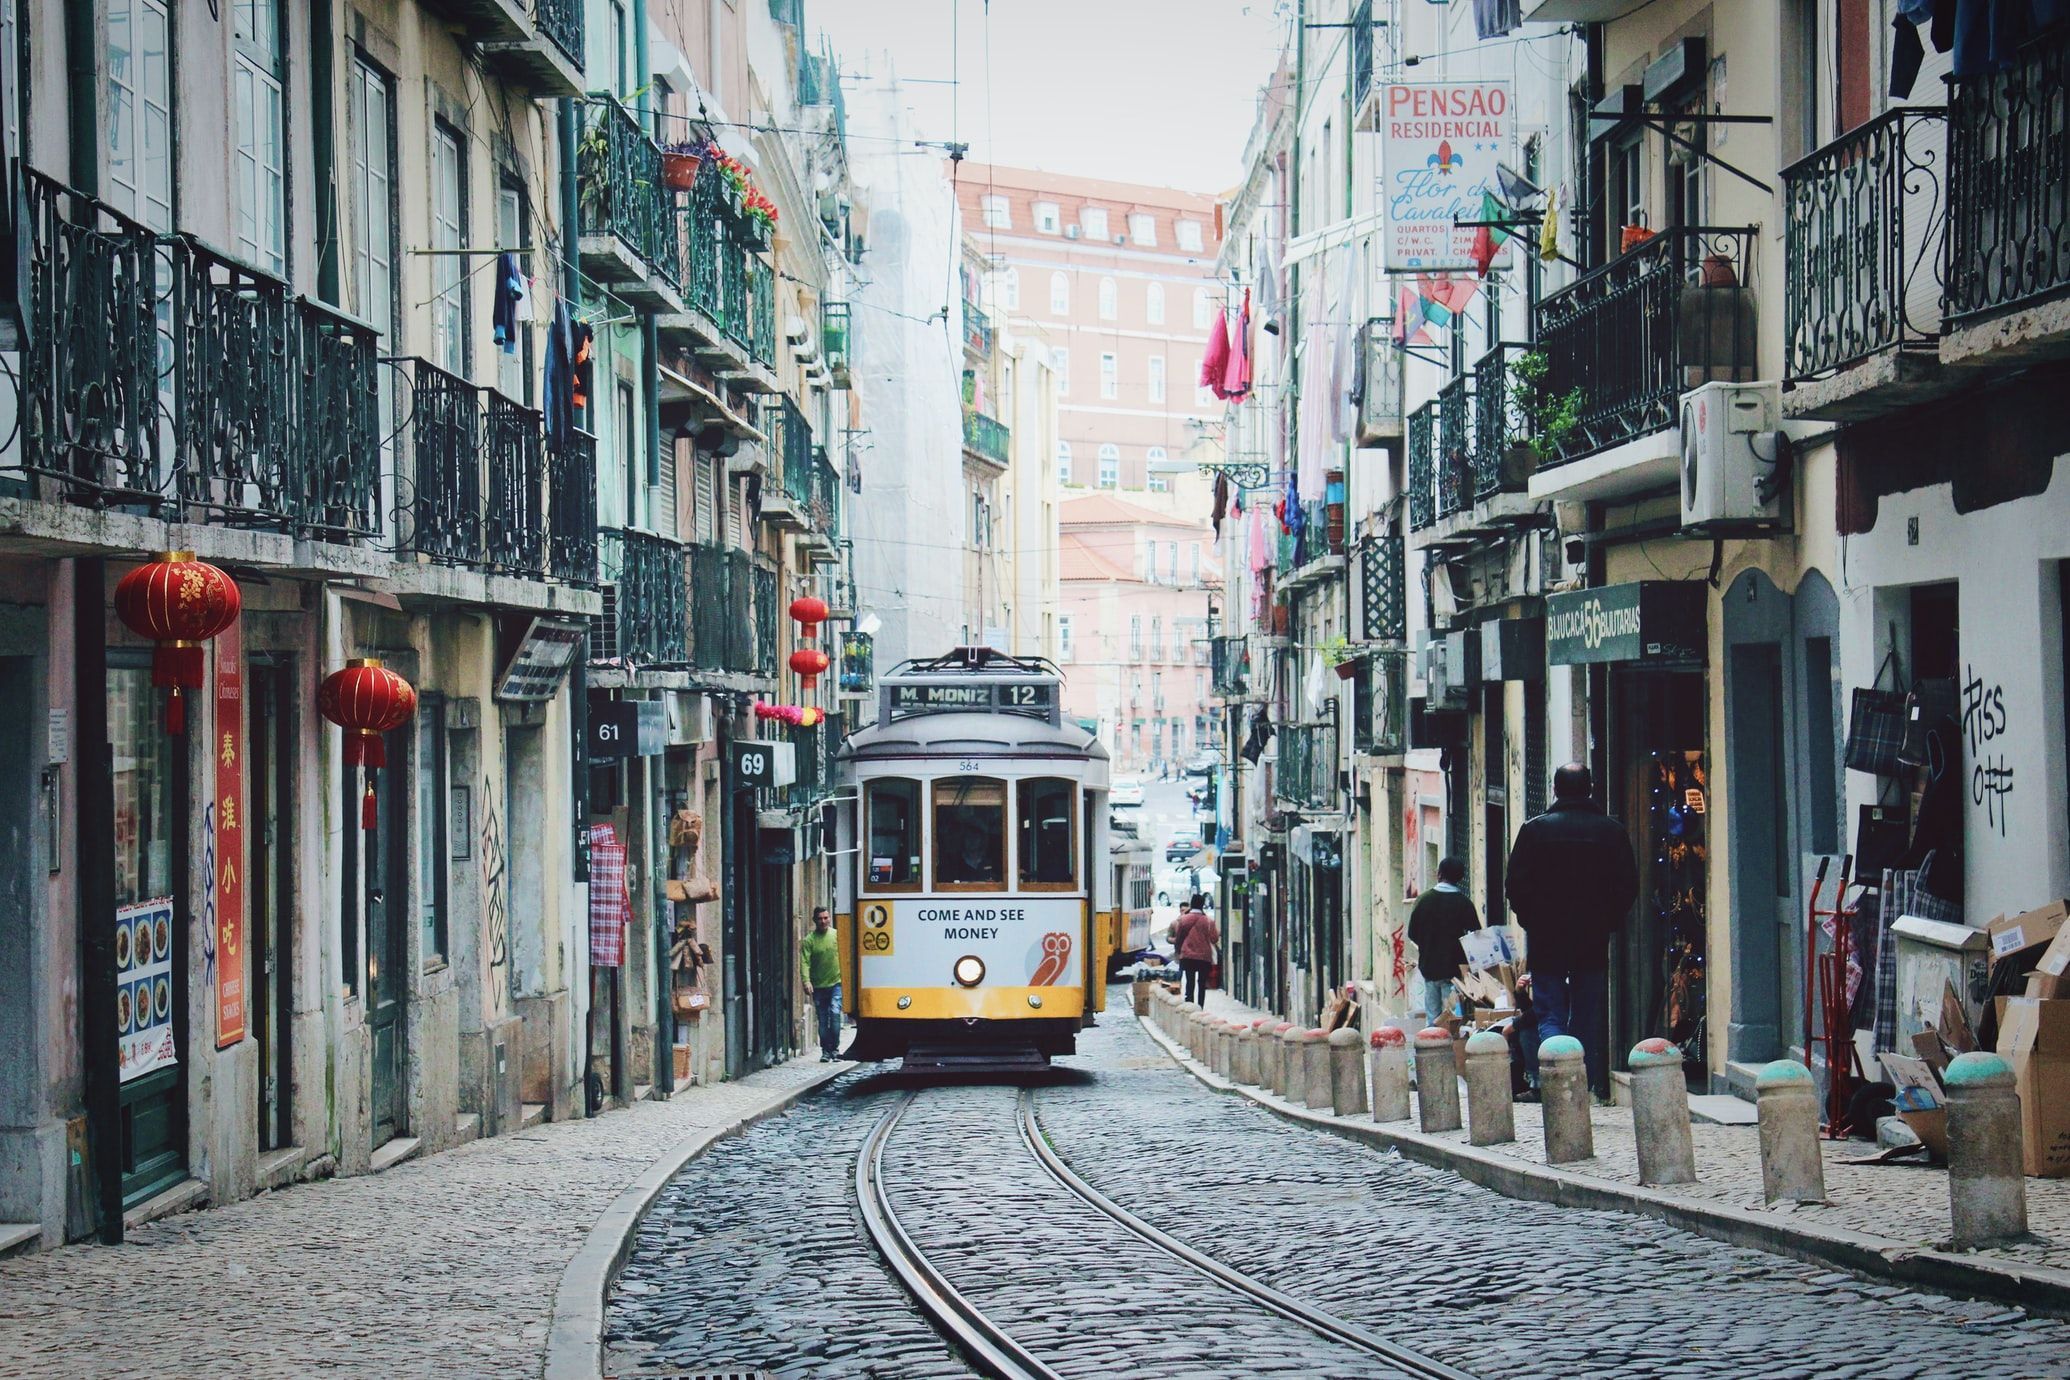 Ідеальна для подорожі взимку: чому варто поїхати до Португалії - Відпустка